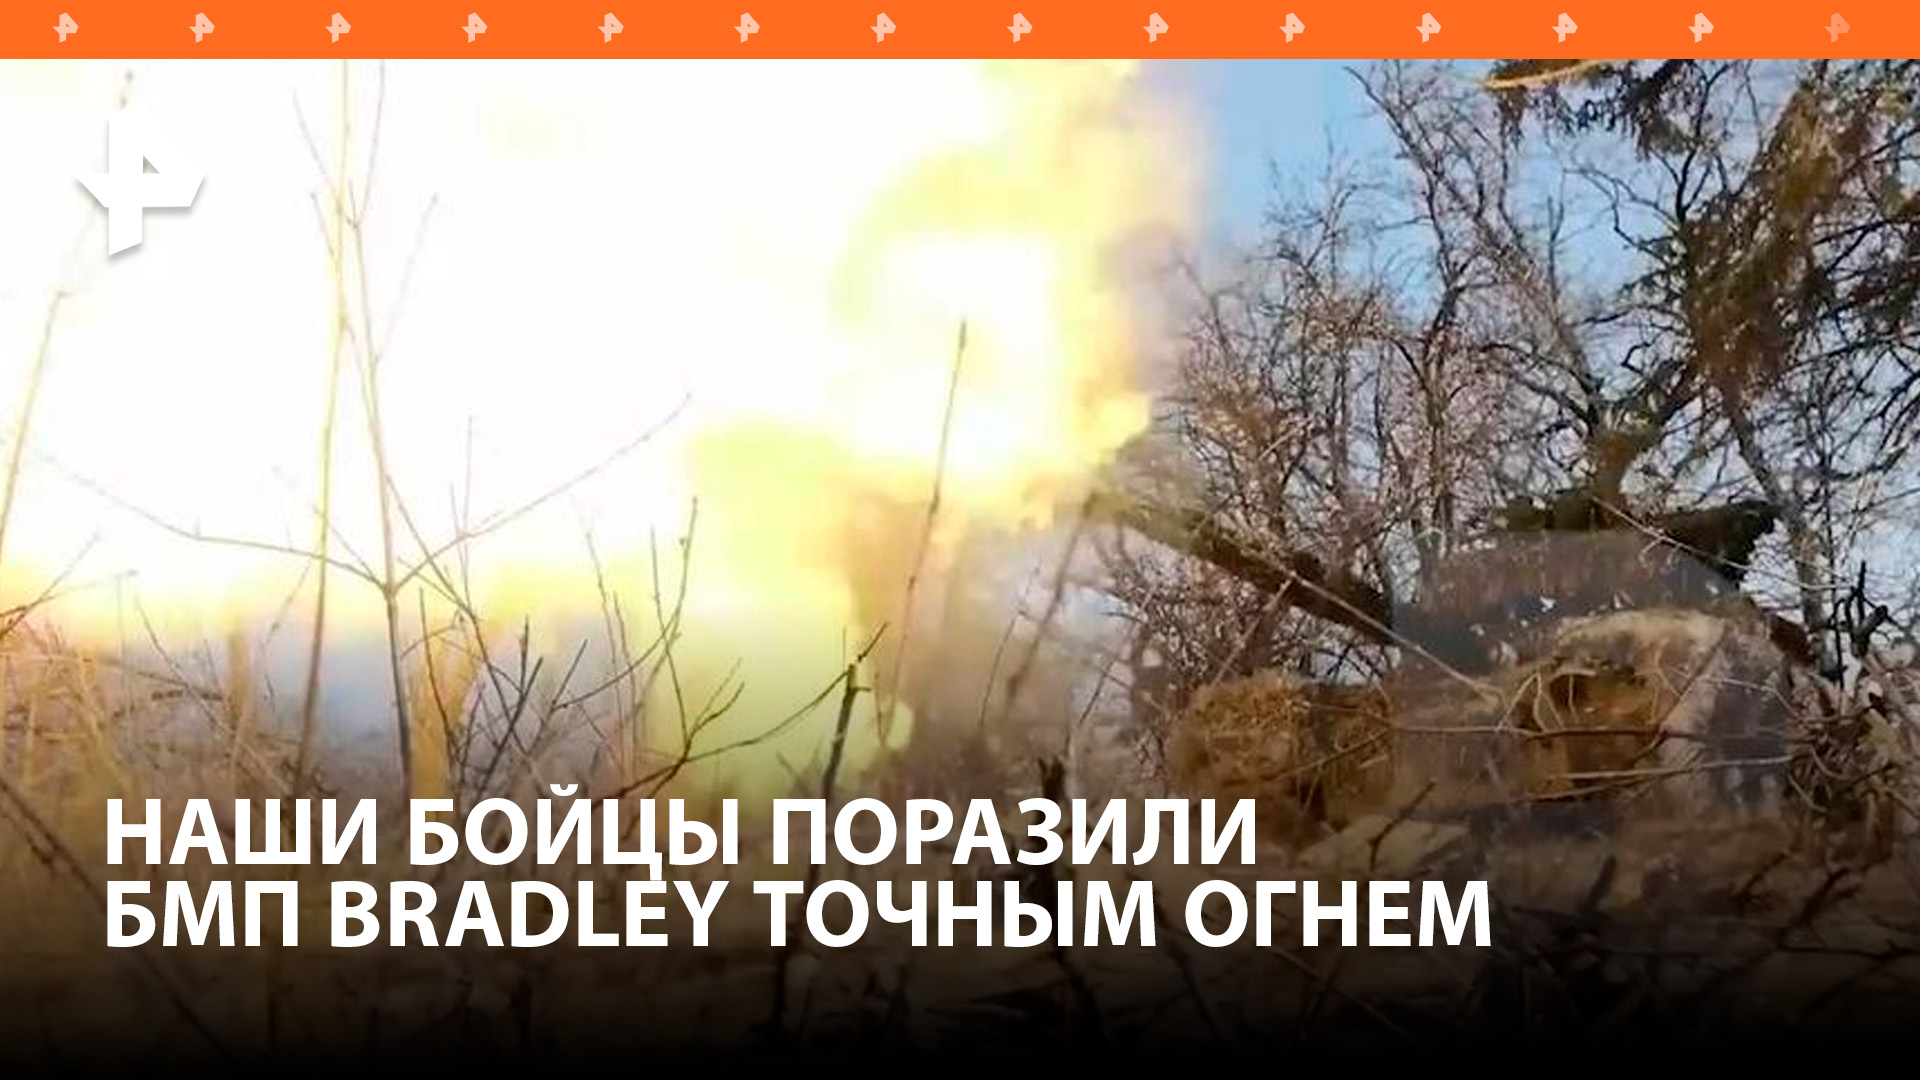 Российские военные уничтожили БМП Bradley на Авдеевском направлении / РЕН Новости